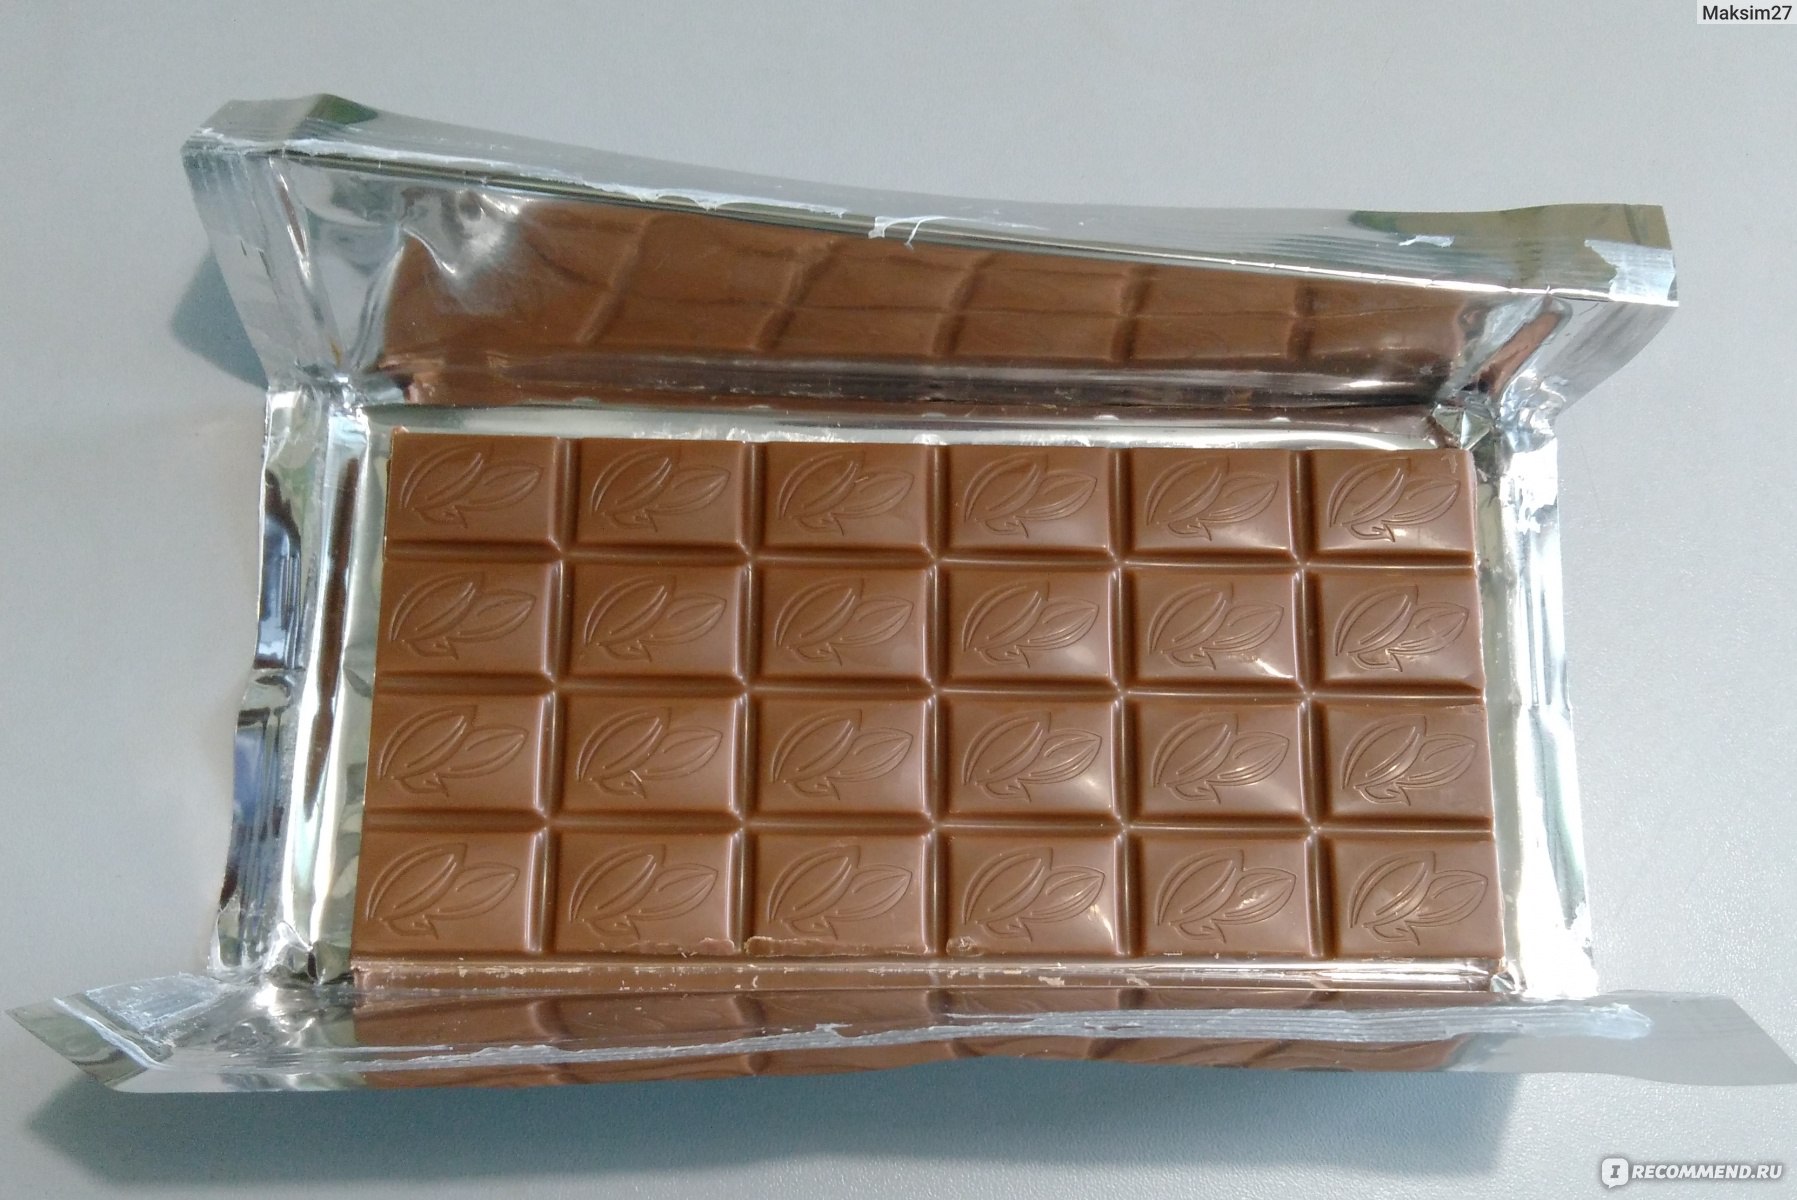 Просто шоколадка. Дешевый шоколад. Самый дешевый шоколад. Вкусные и недорогие шоколадки. Палетка в виде шоколадки.